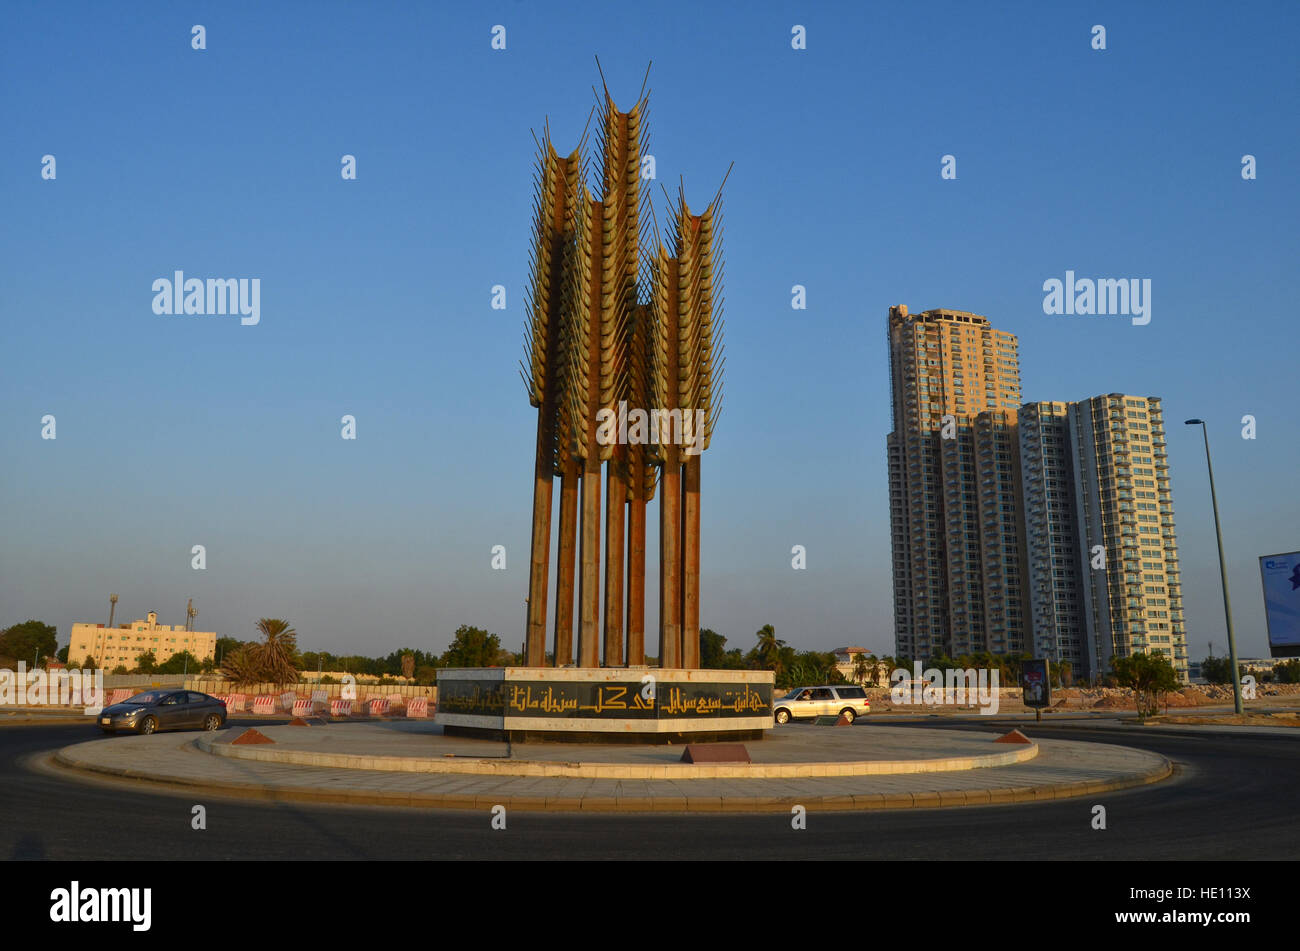 Stalks Of Wheat Sculpture in Jeddah Corniche Stock Photo